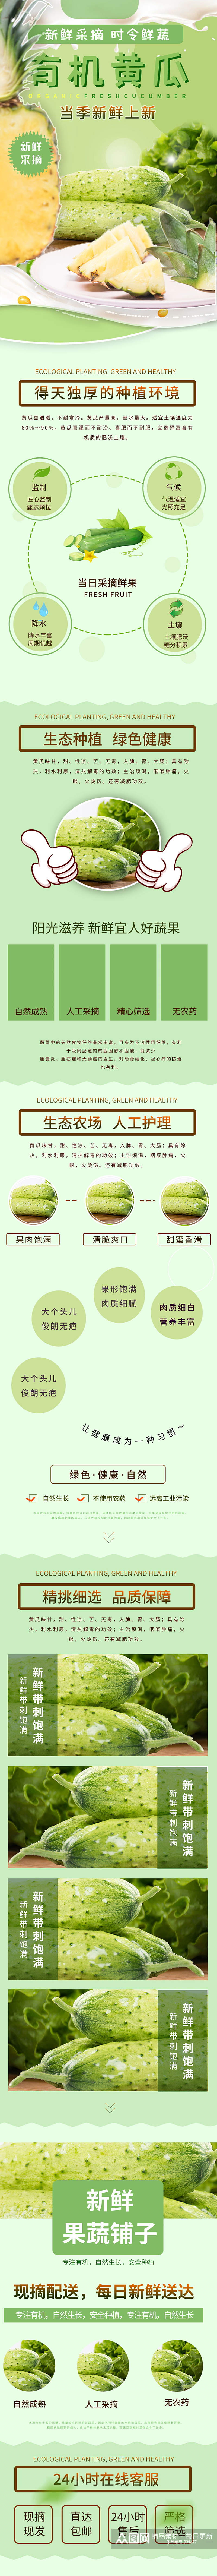 绿色新鲜有机黄瓜详情页素材